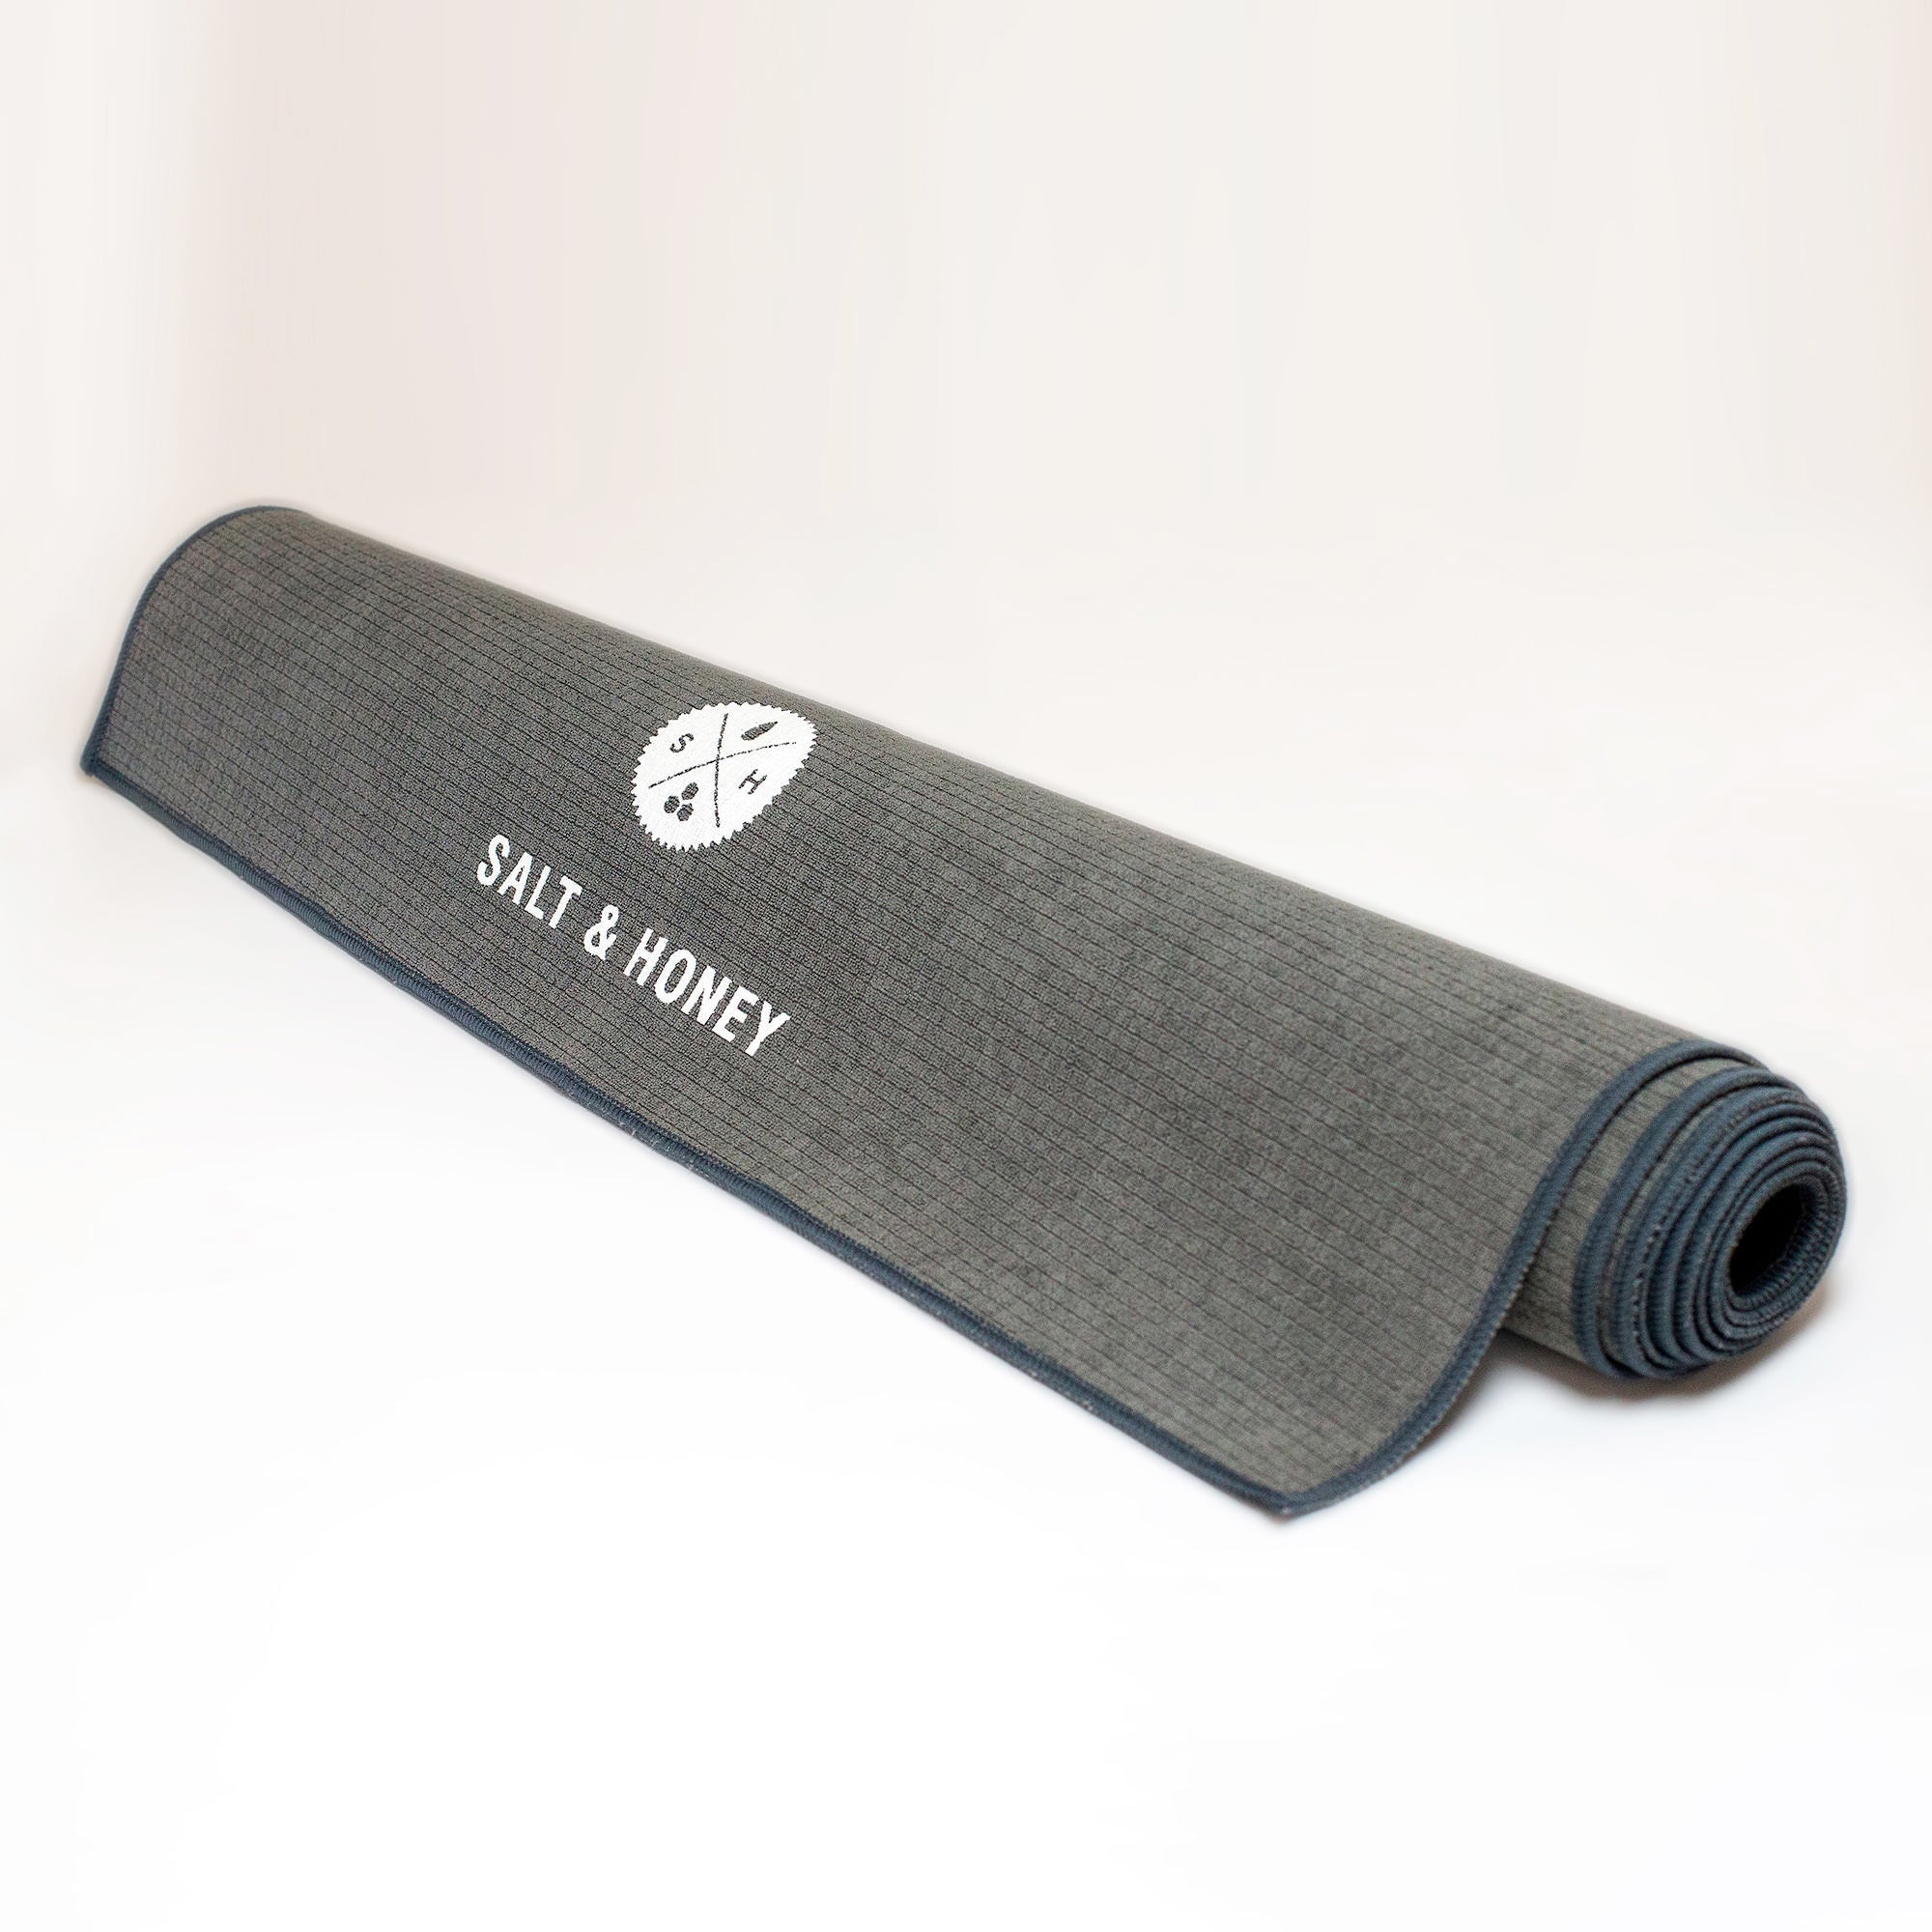 Salt & Honey Non-Slip Pilates Reformer Mat Towel (Gray) : :  Sports, Fitness & Outdoors